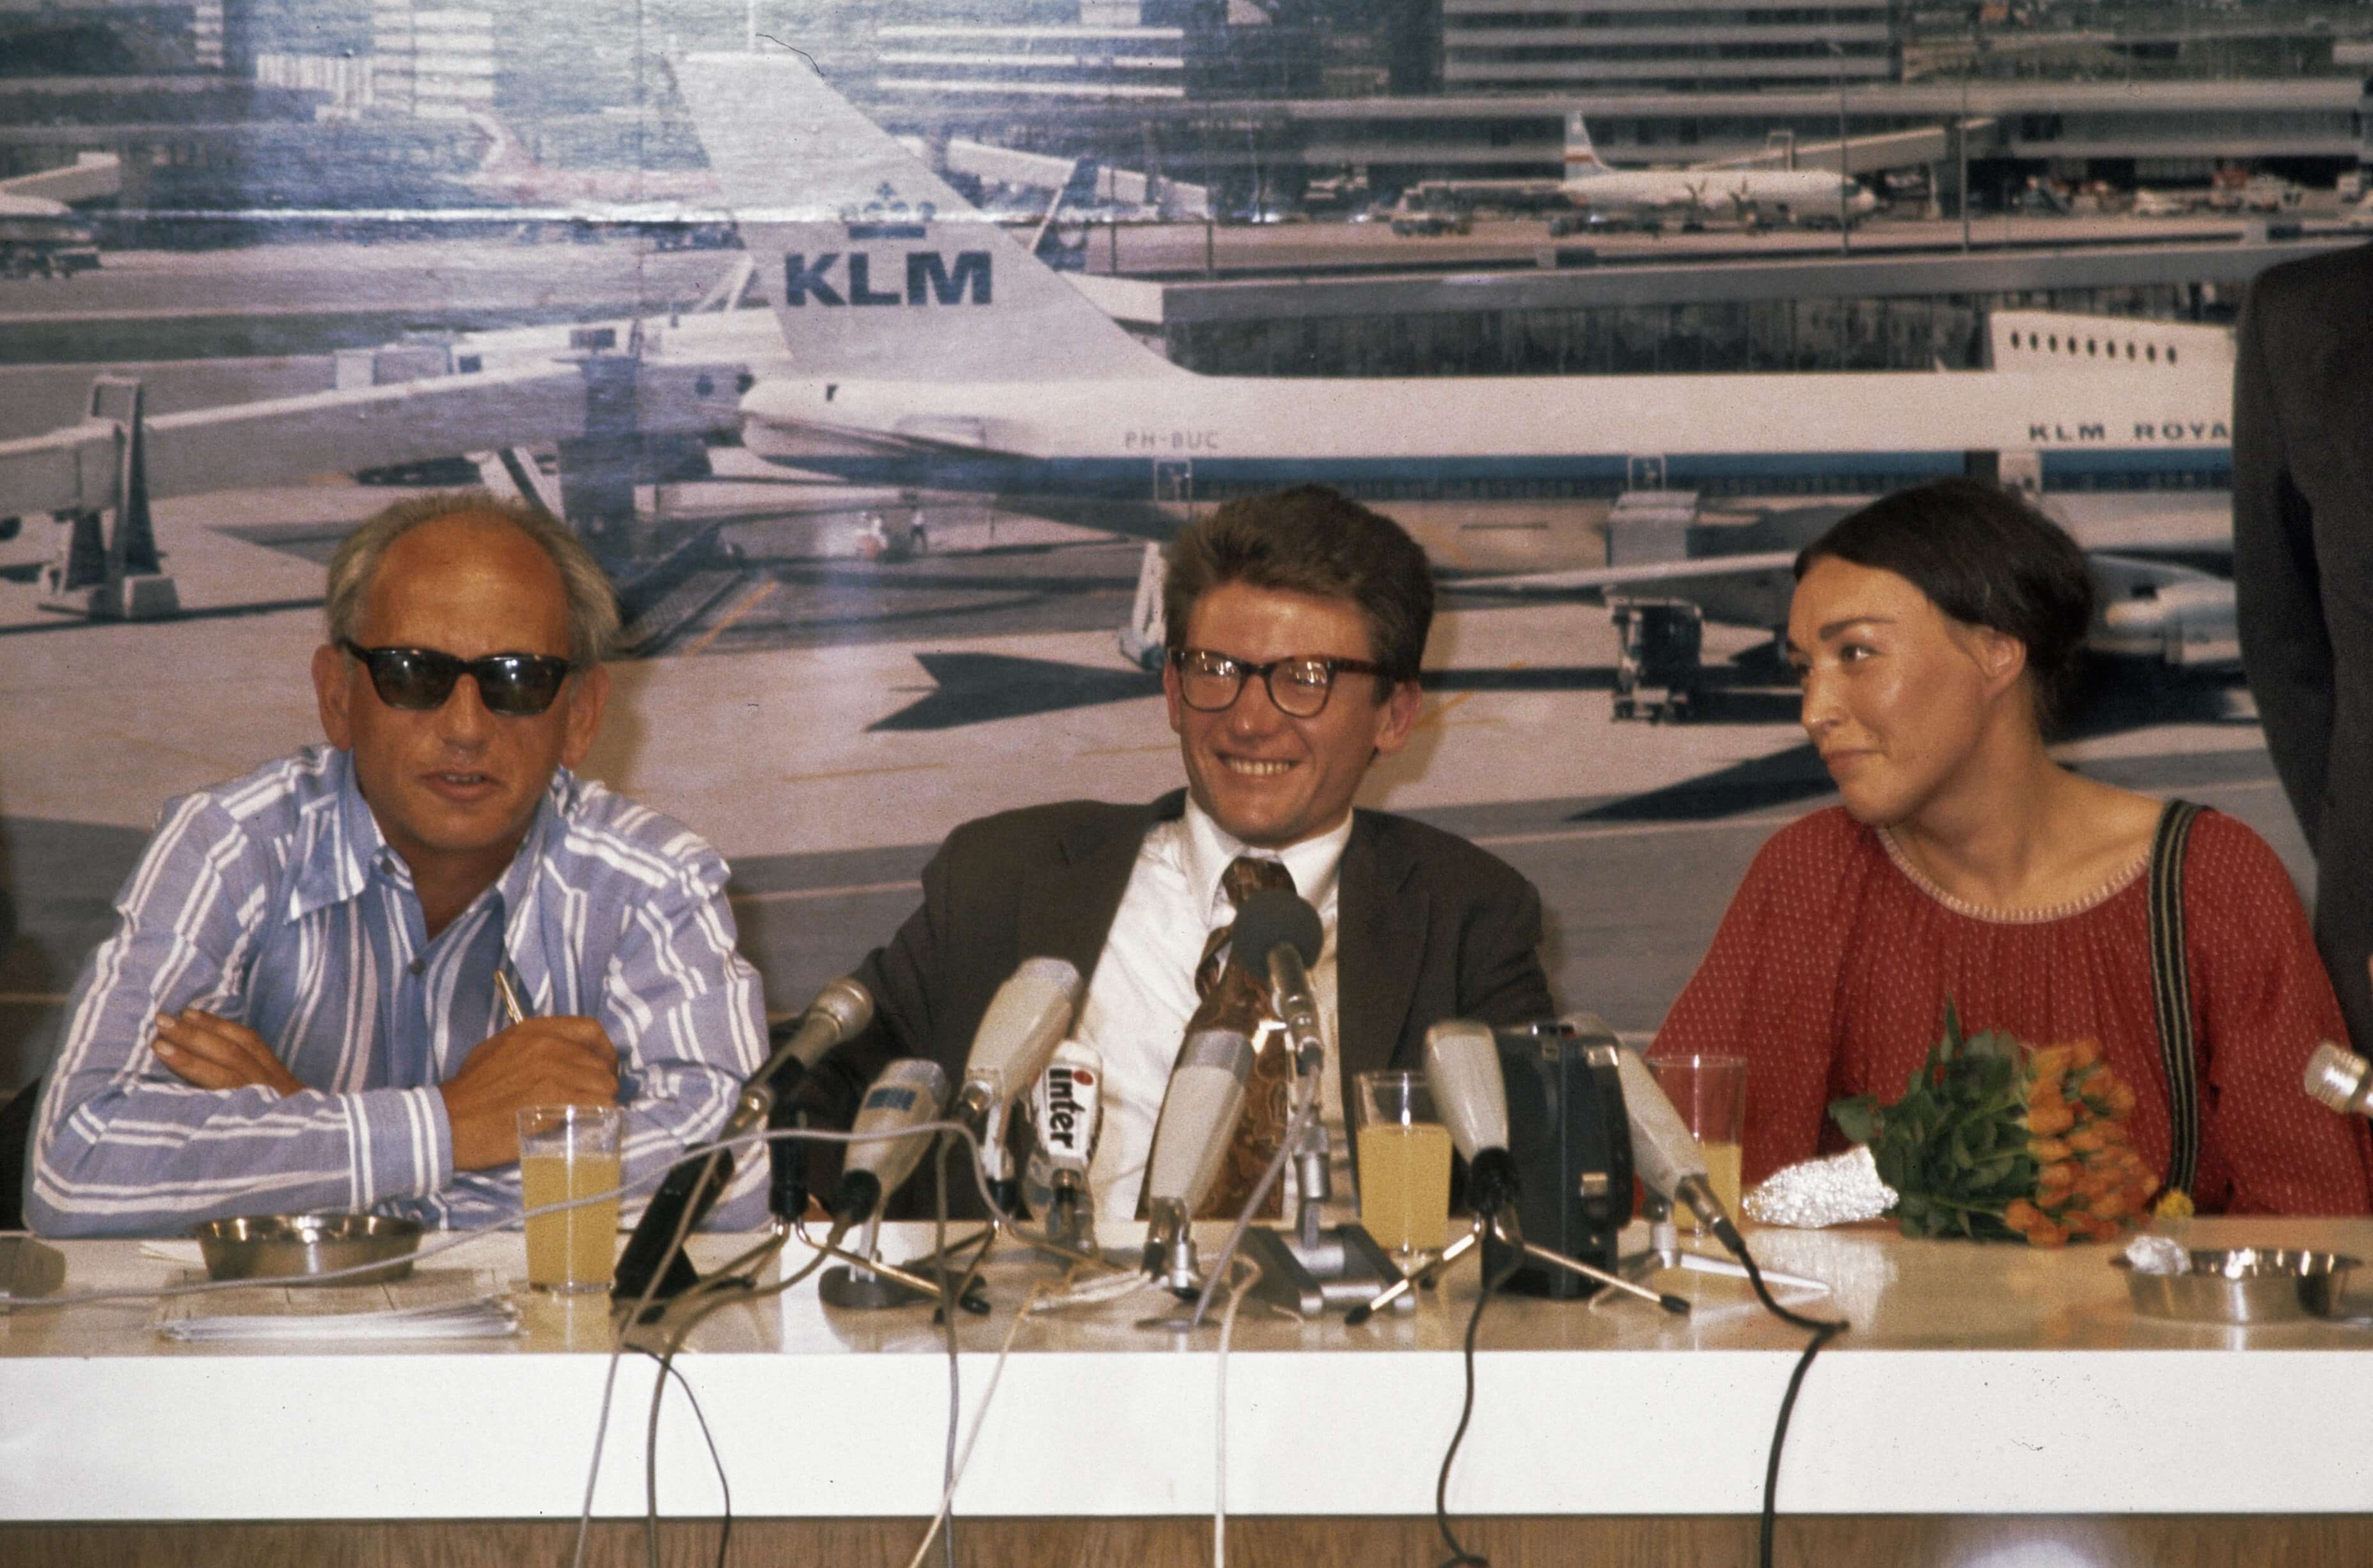 Russische dissident Andrej Amalrik en echtgenoot Gjoezel op Schiphol tijdens persconferentie - 15 juli 1976 - Peters, Hans - Anefo - NA (3)-2